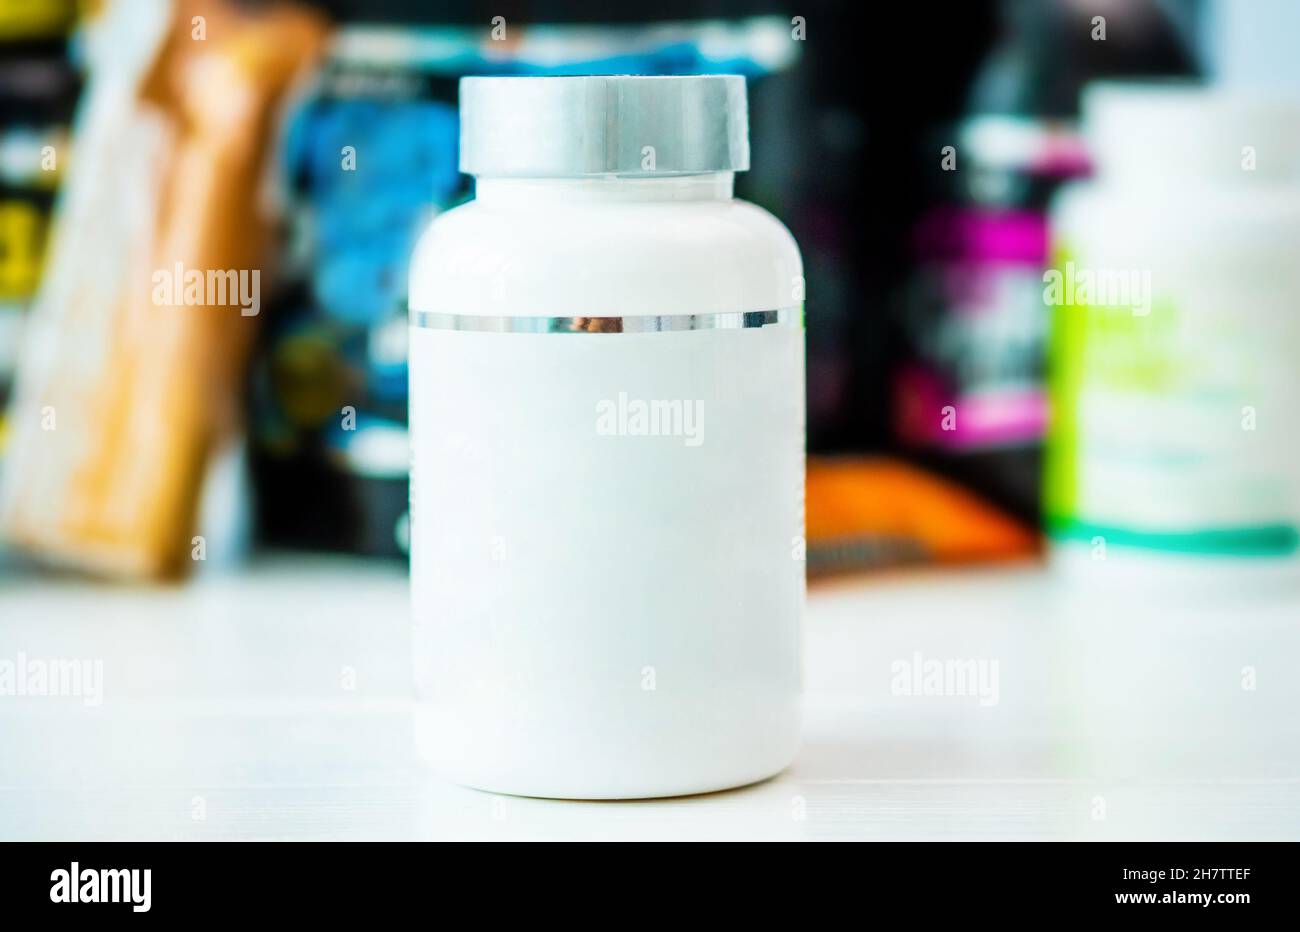 Lata blanca de vitaminas sin etiqueta Foto de stock